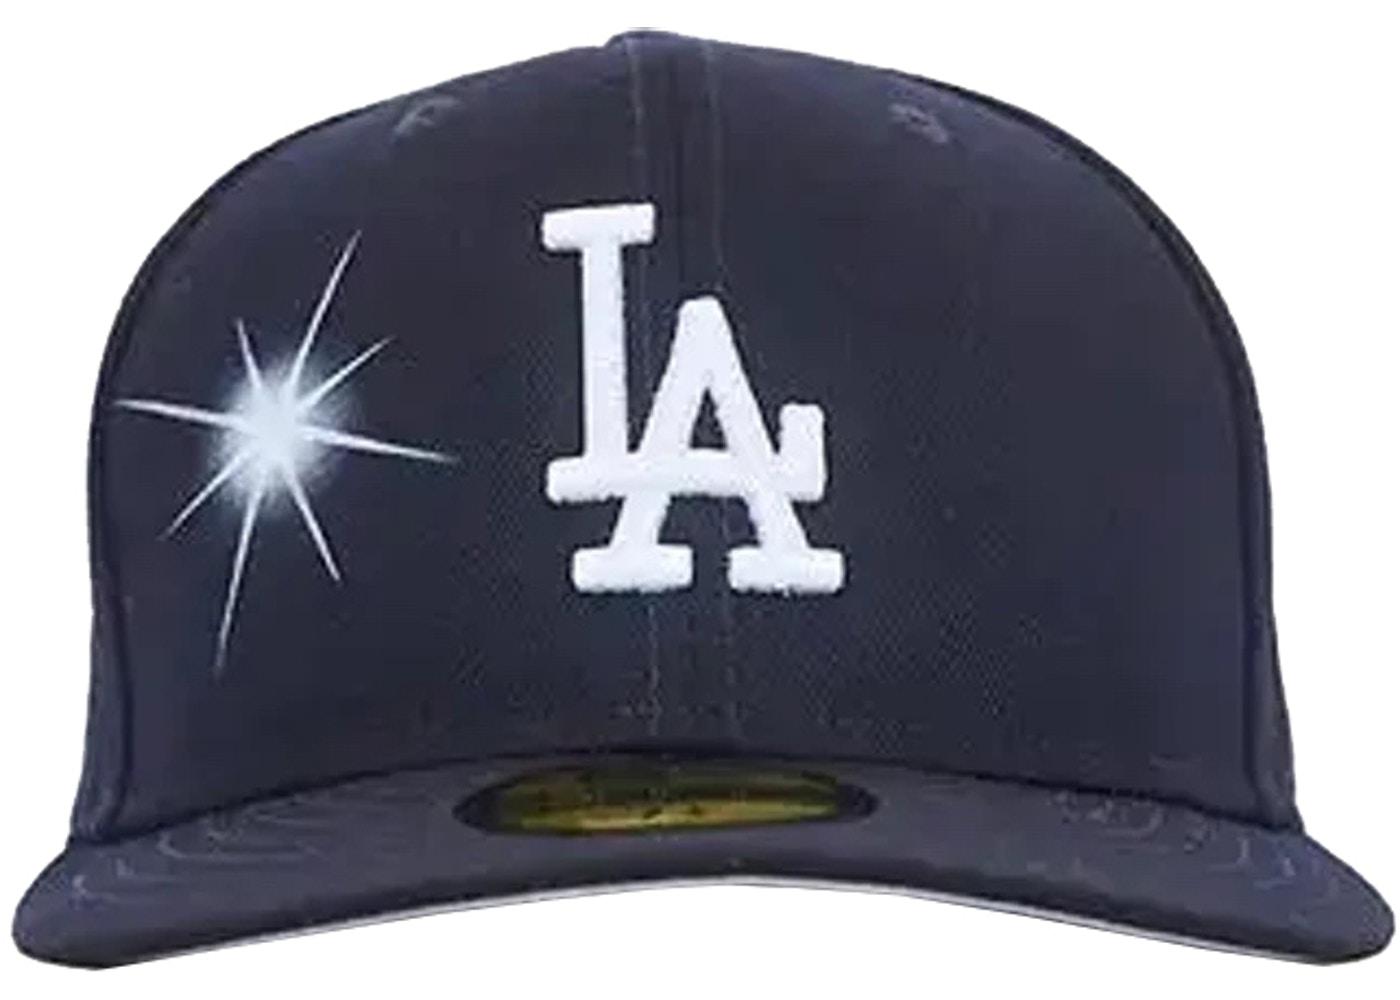 Los Angeles Dodgers Fitted Hat Navy by AY EL AY EN